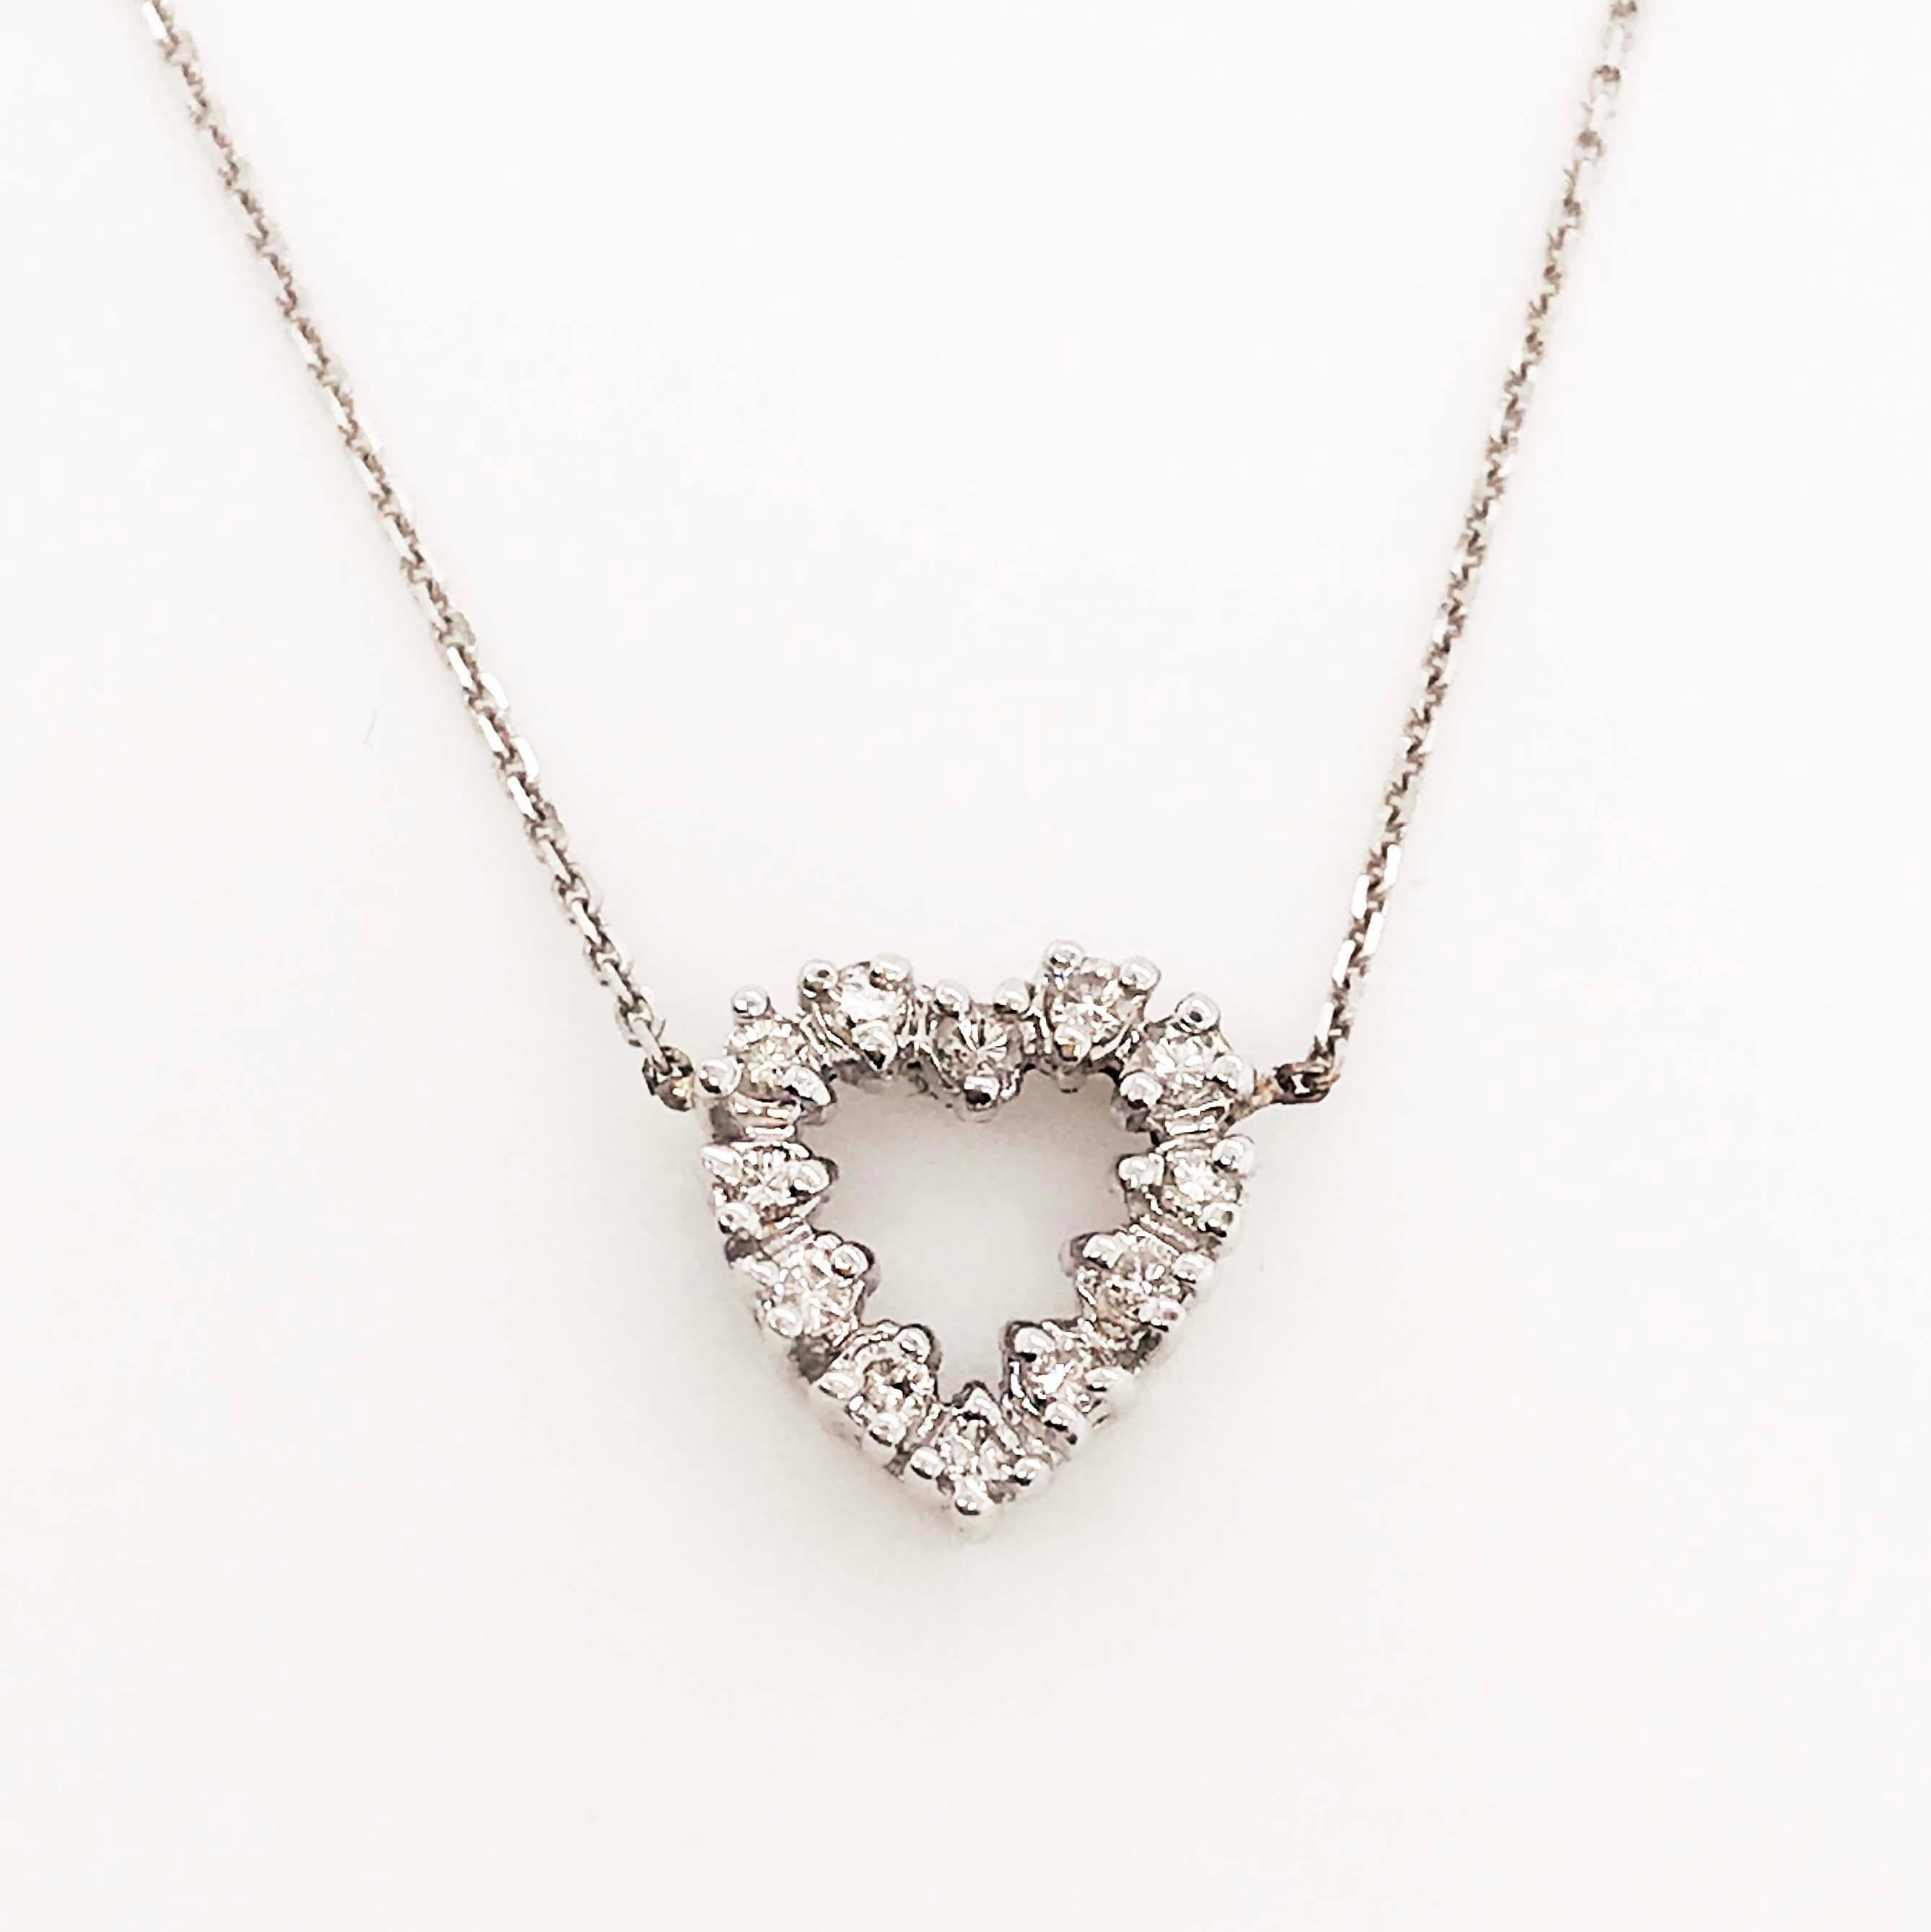 Round Cut Diamond Heart Necklace, 14 Karat White Gold Diamond Heart Necklace For Sale